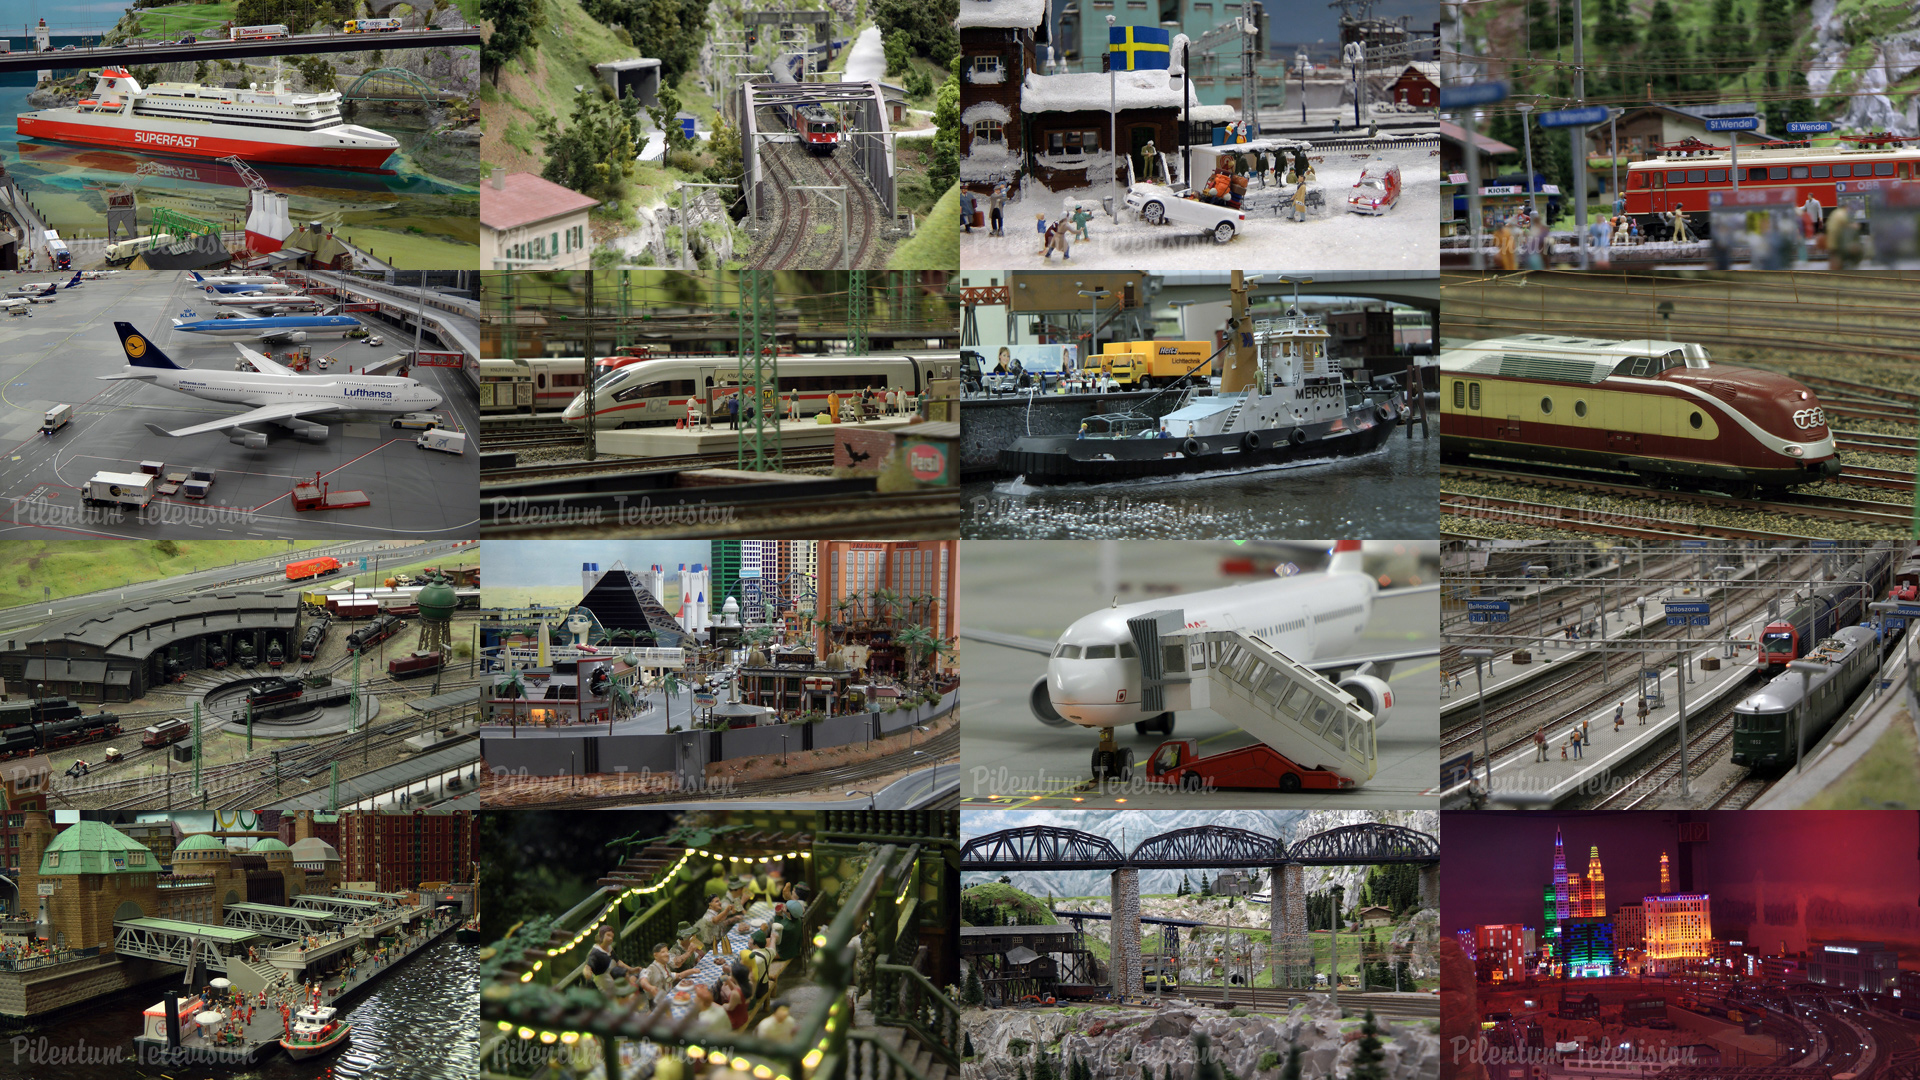 טיול מסביב לעולם במיני רכבות: במוזיאון זה יש את מערכת הרכבות המיניאטורית הגדולה בעולם